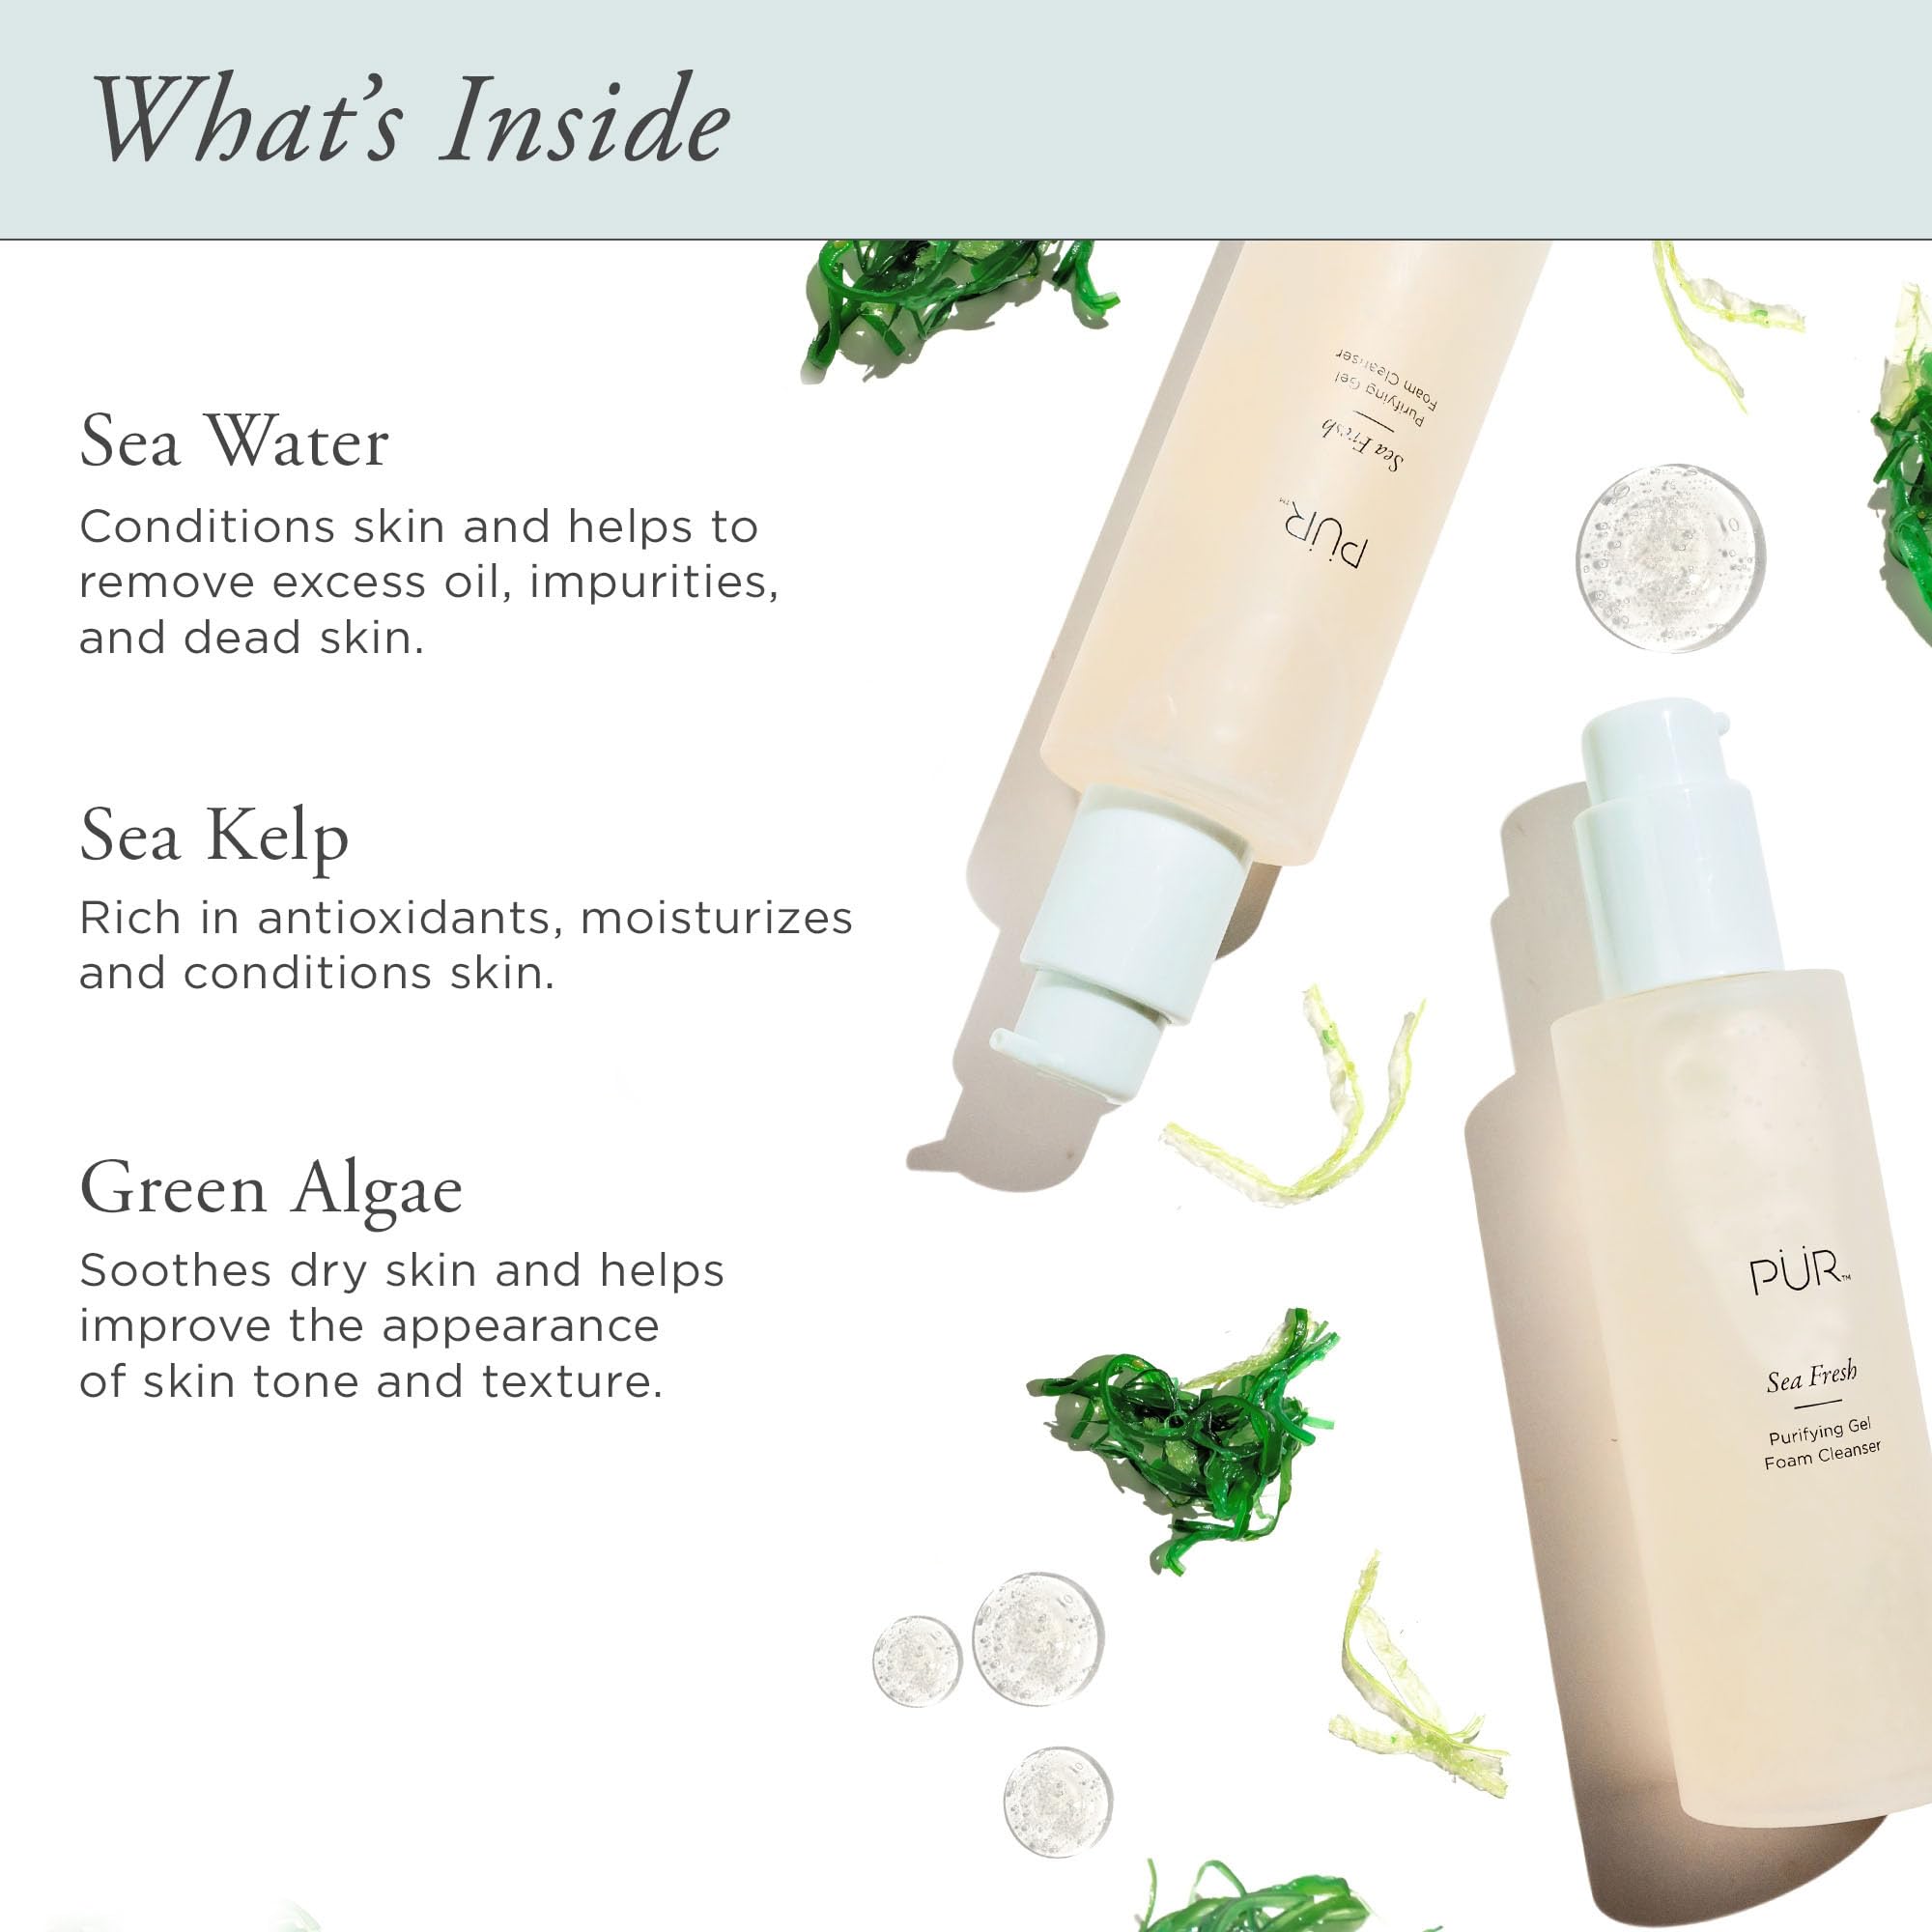 PÜR MINERALS Sea Fresh Purifying Gel Foam Cleanser, Algae, Sea Kelp, Antioxidants, 5 FL oz